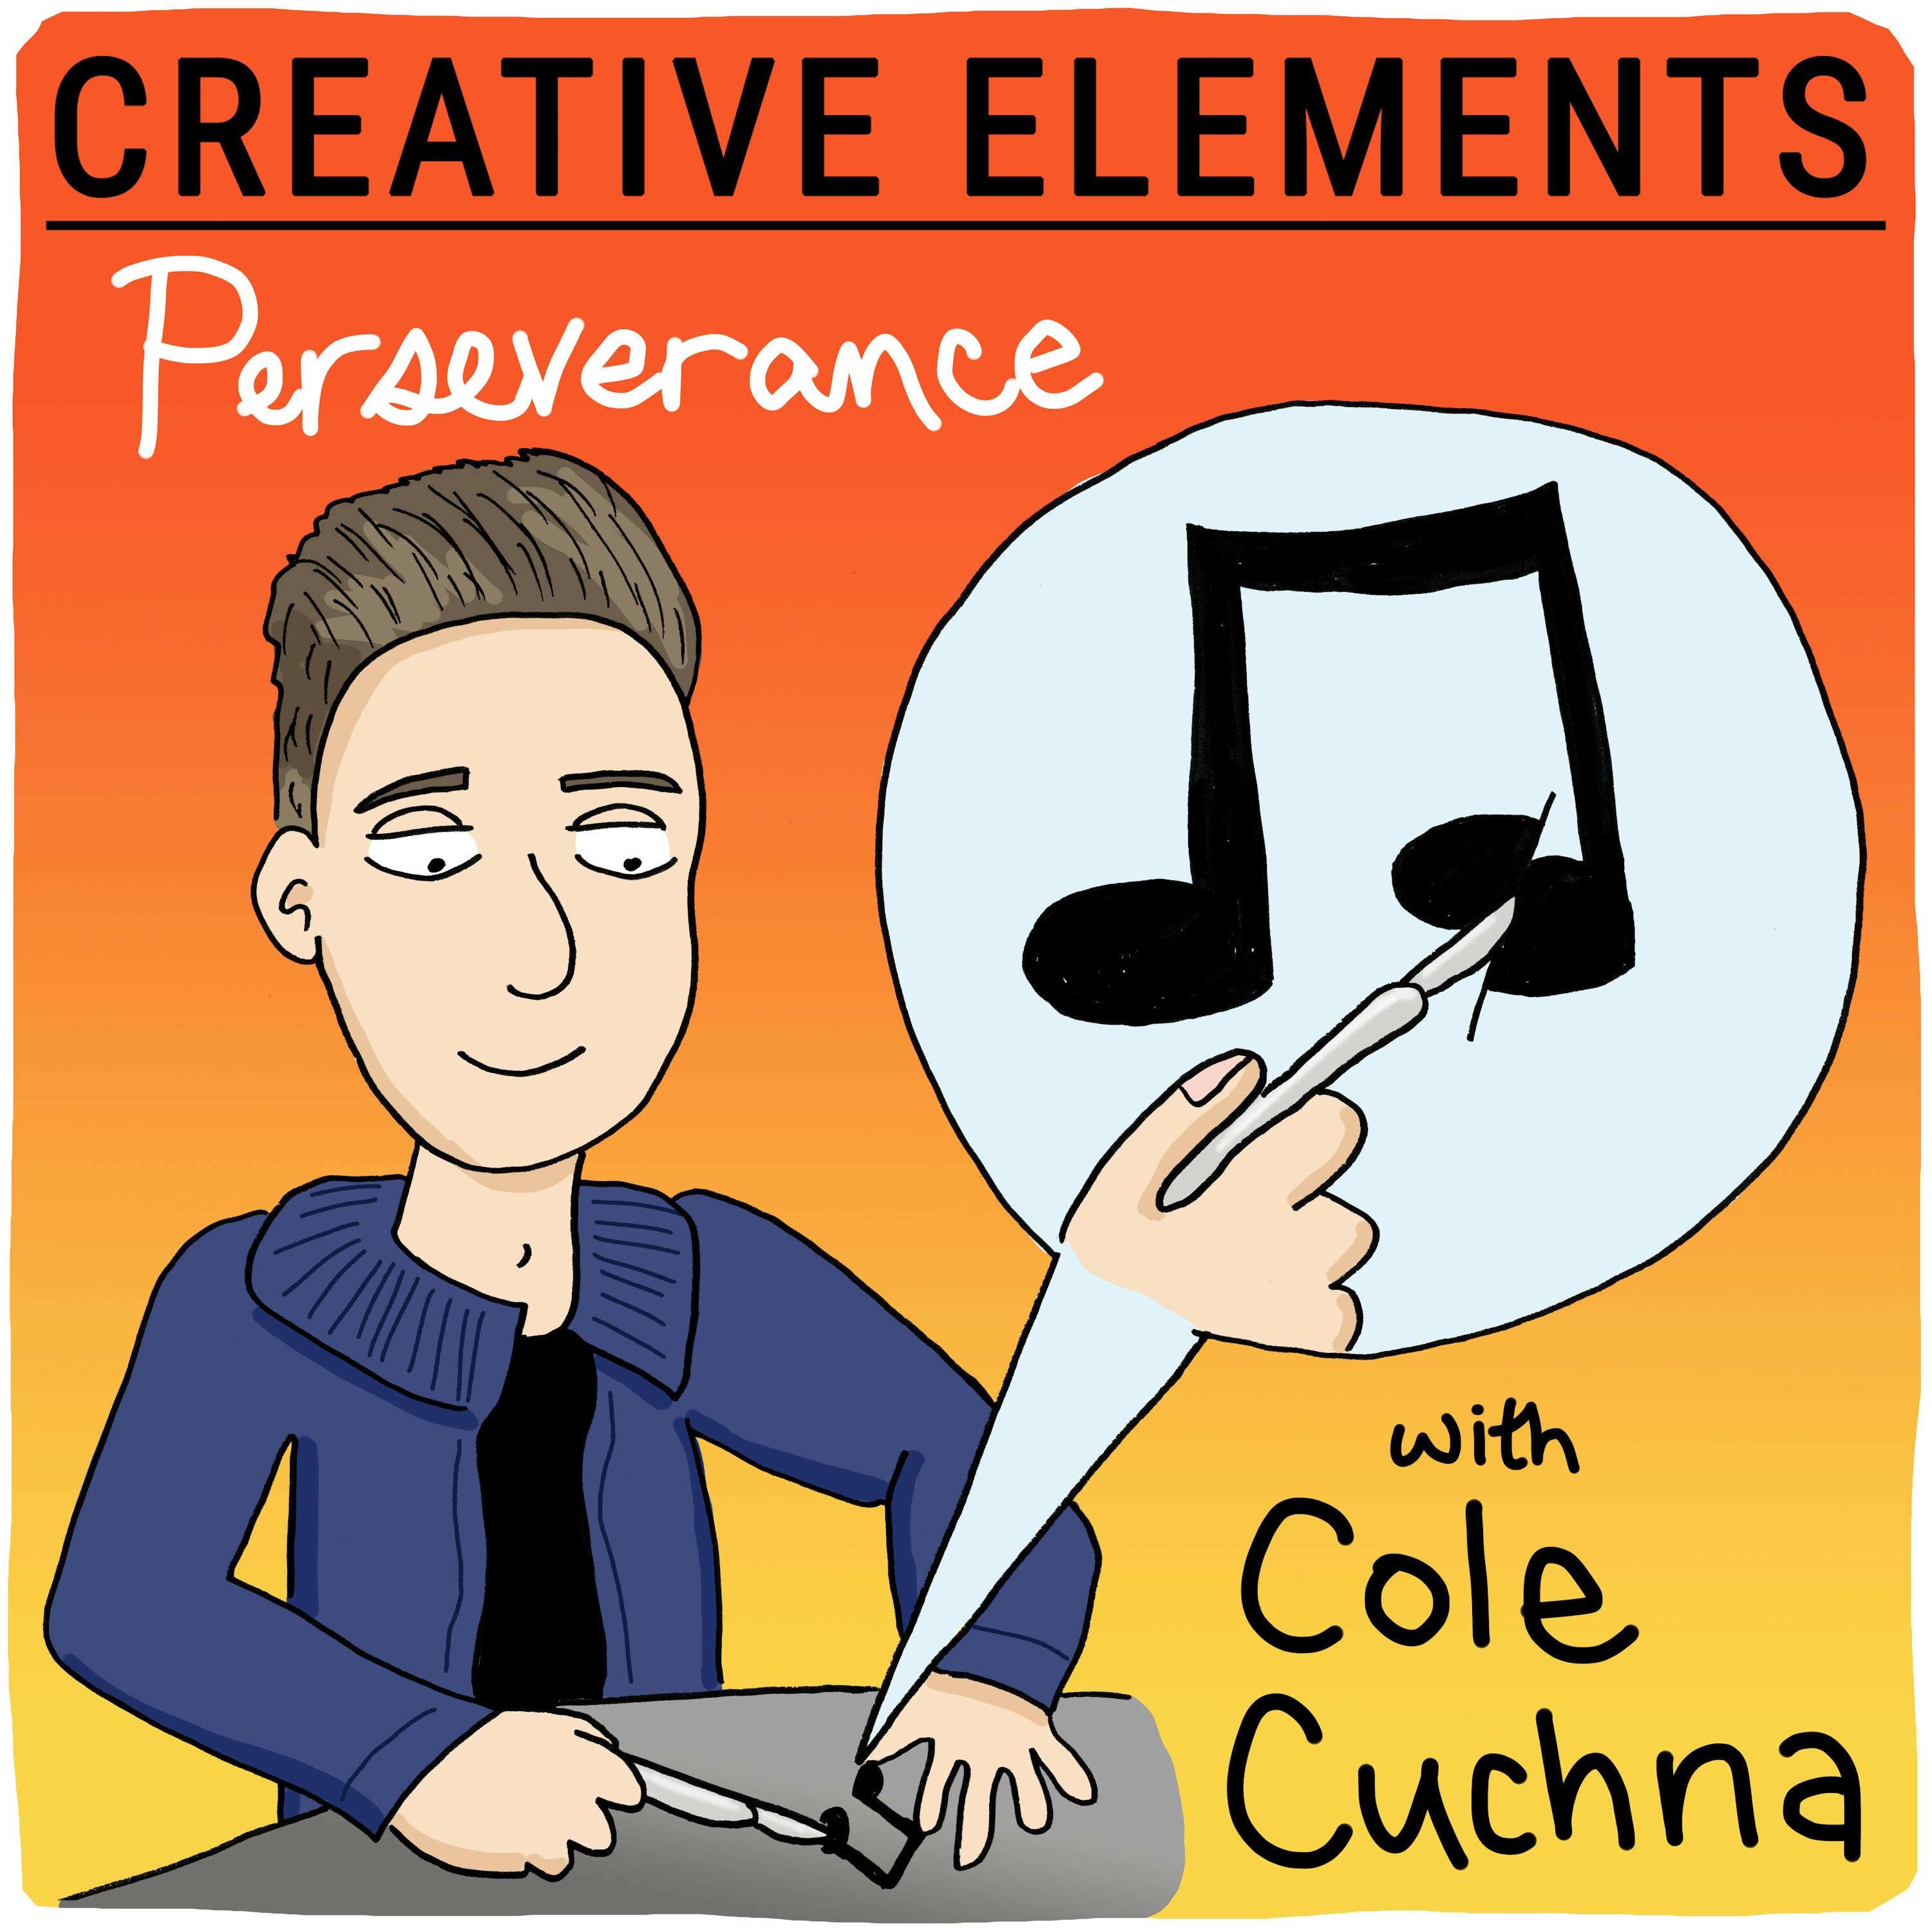 #52: Cole Cuchna [Perseverance] Image